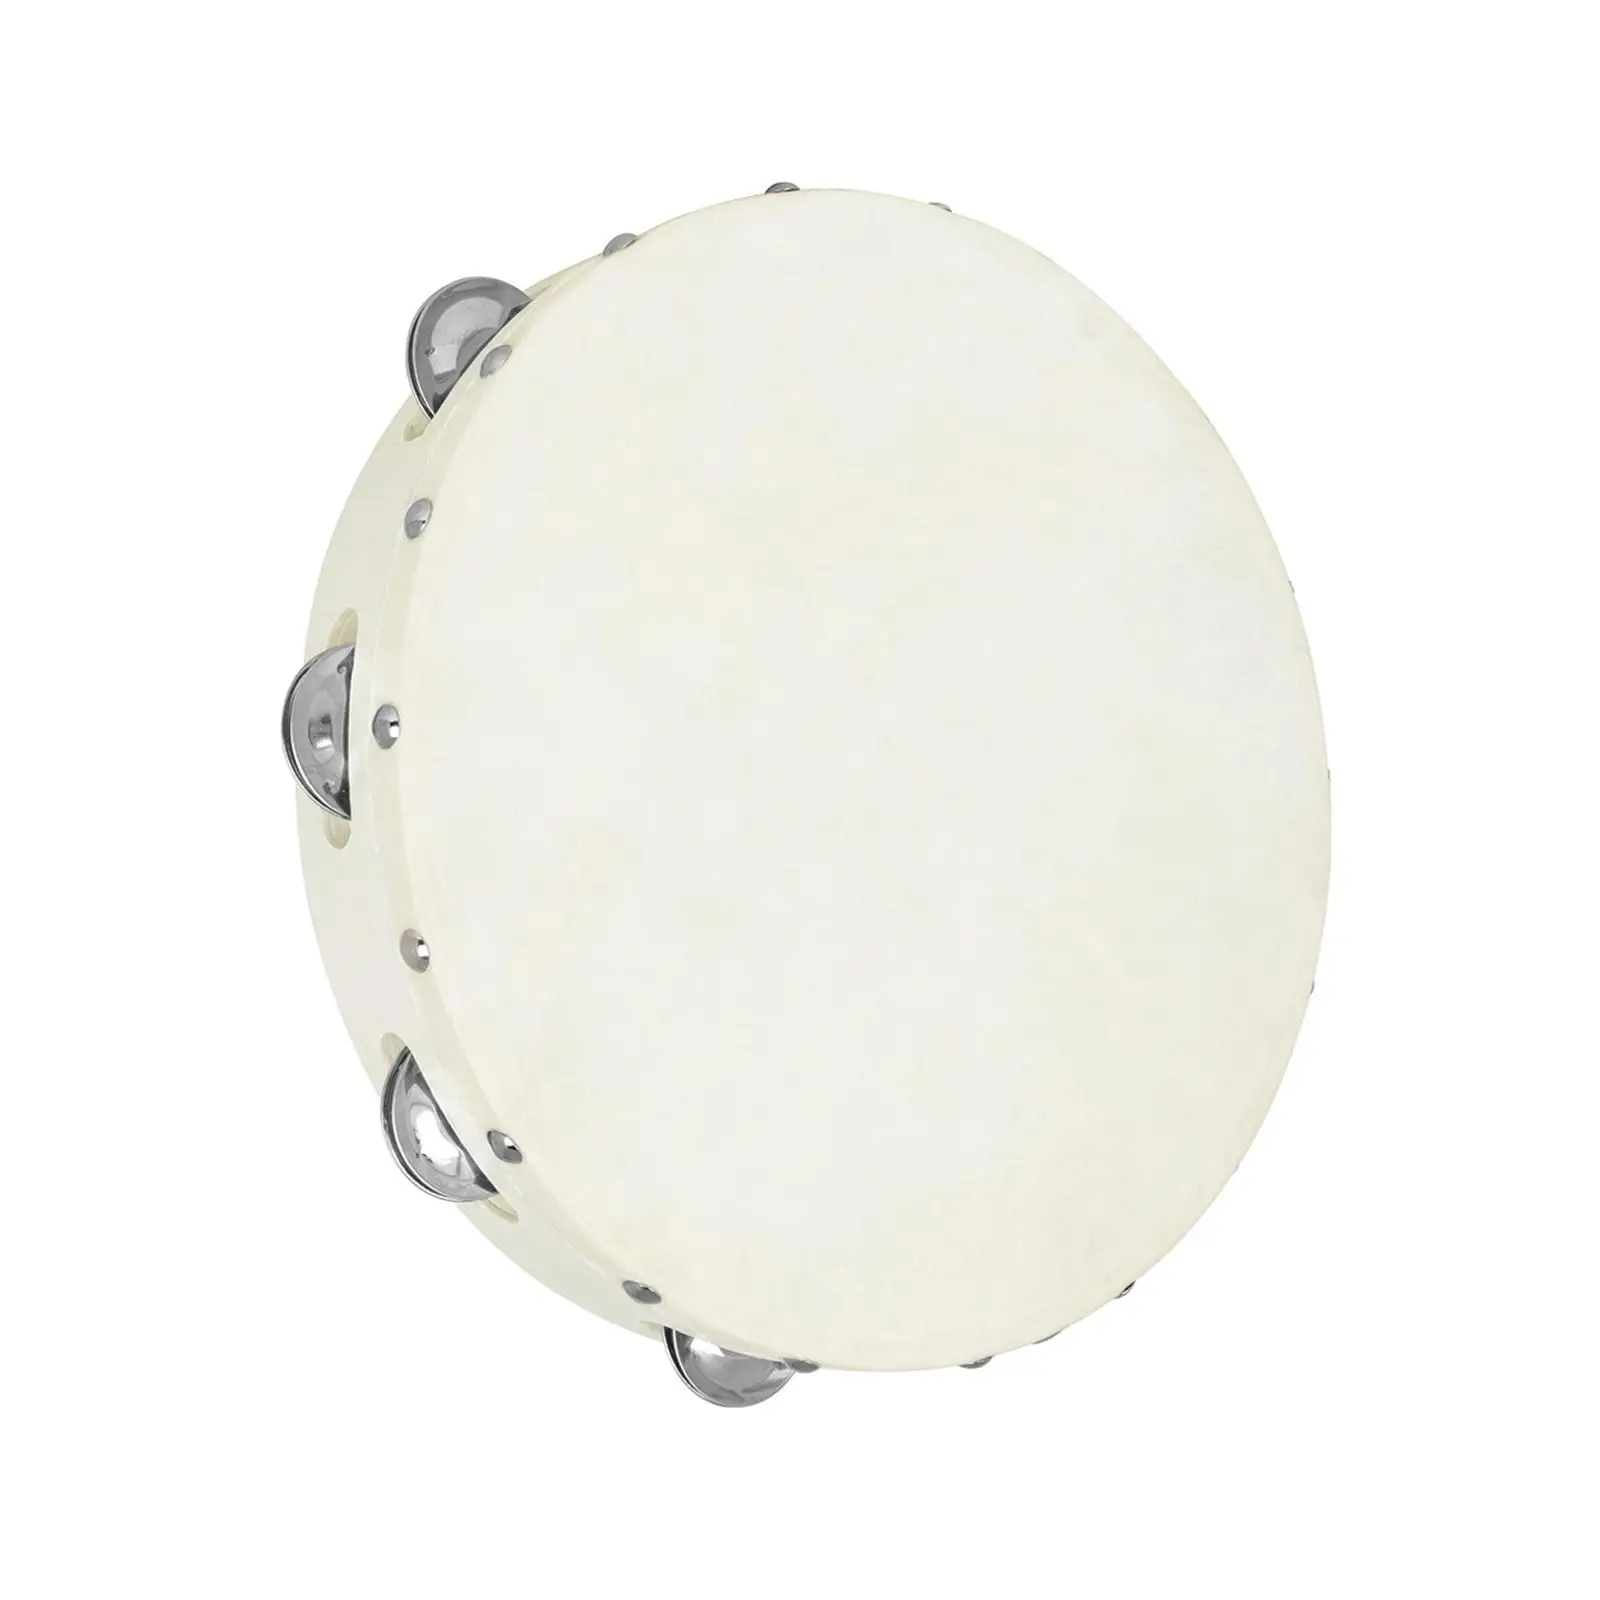 Tambourine Drum Single Row Metal Bells Handheld Drum for Party Children